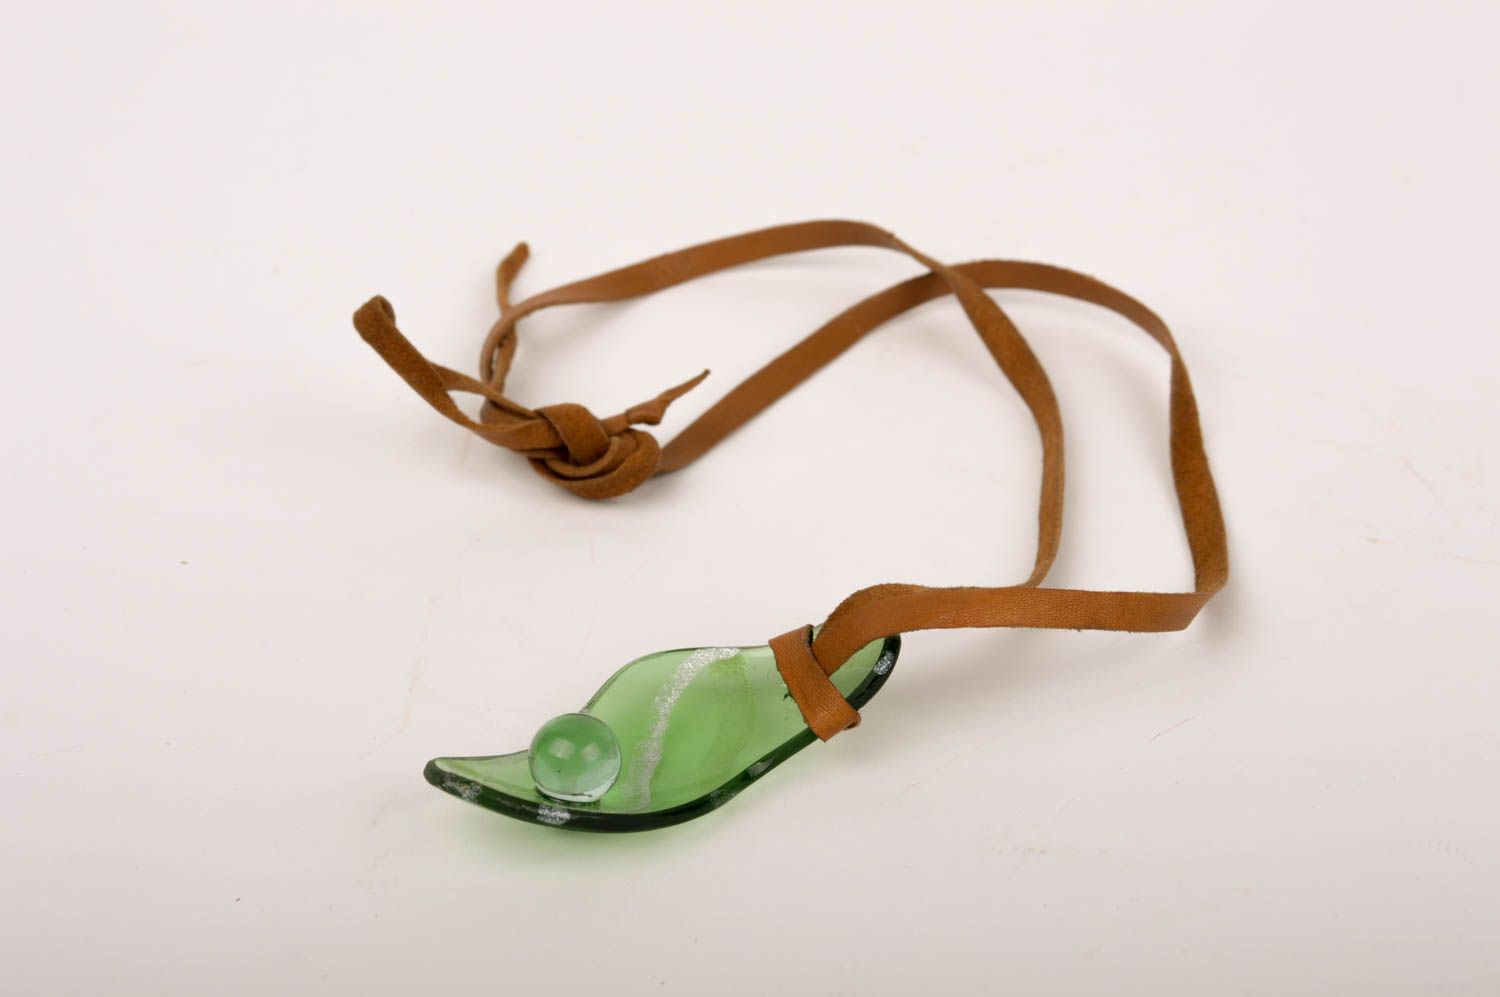 Кулон на шнурке ручной работы стеклянный кулон зеленый украшение из стекла фото 1